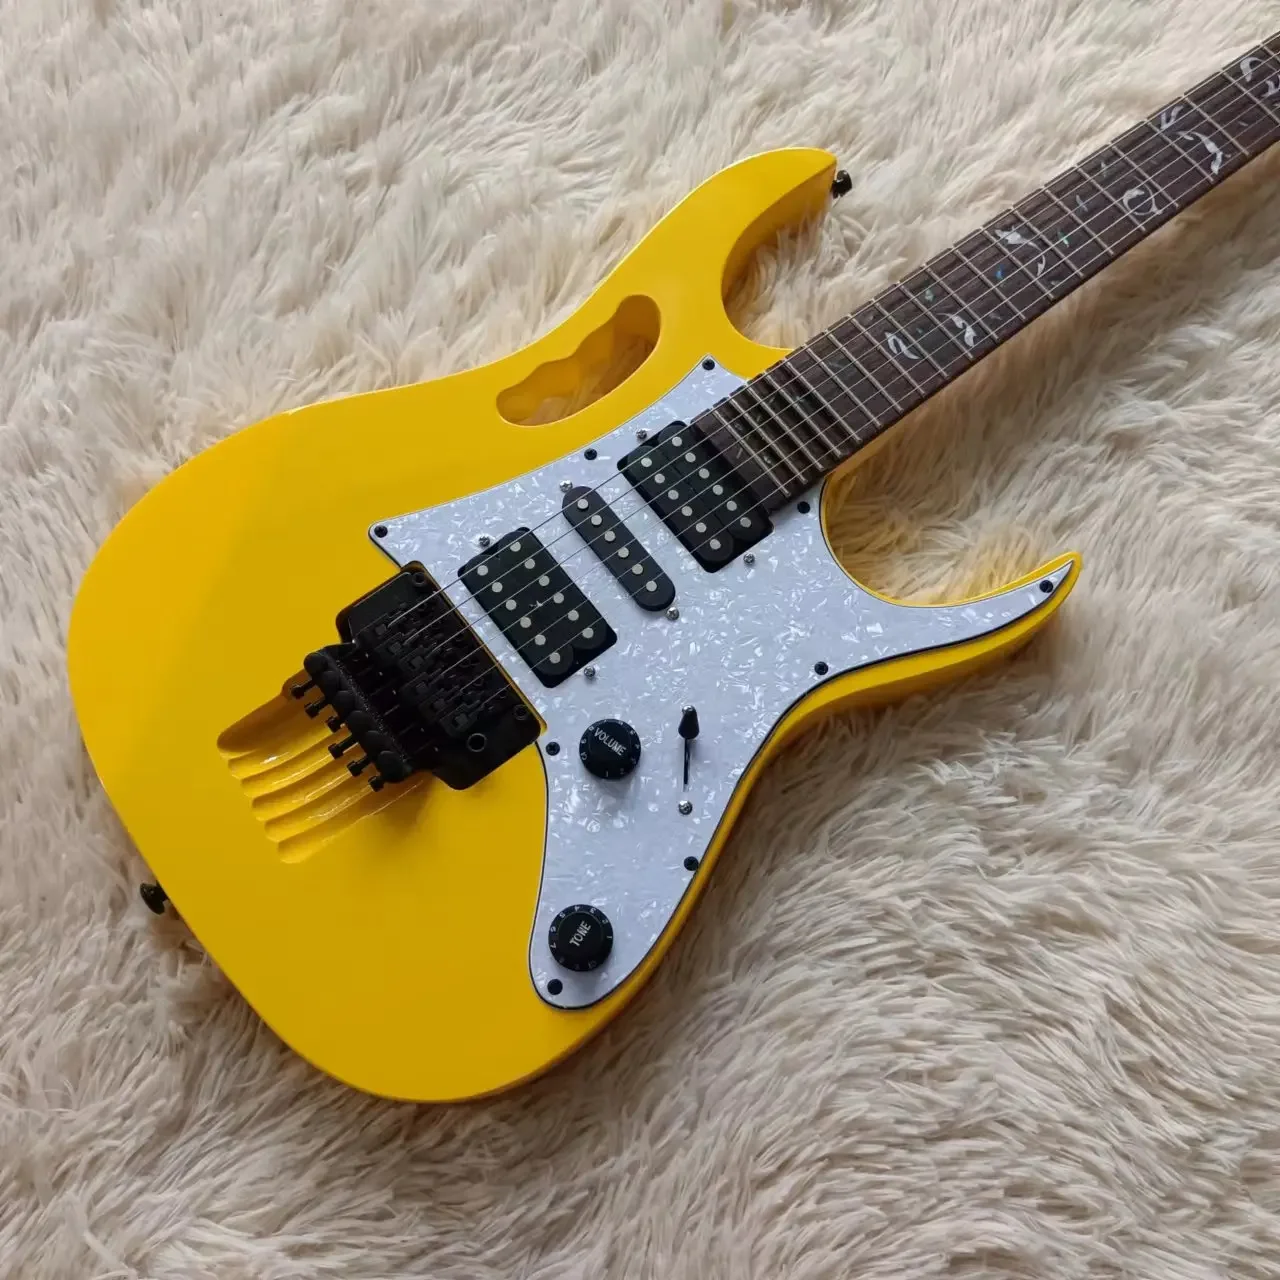 

Желтая электрическая гитара 7 sтеввай, инкрустация Древа Жизни, Floyd Rose Tremolo, фиксирующая гайка, черная фурнитура, белая, стандартная